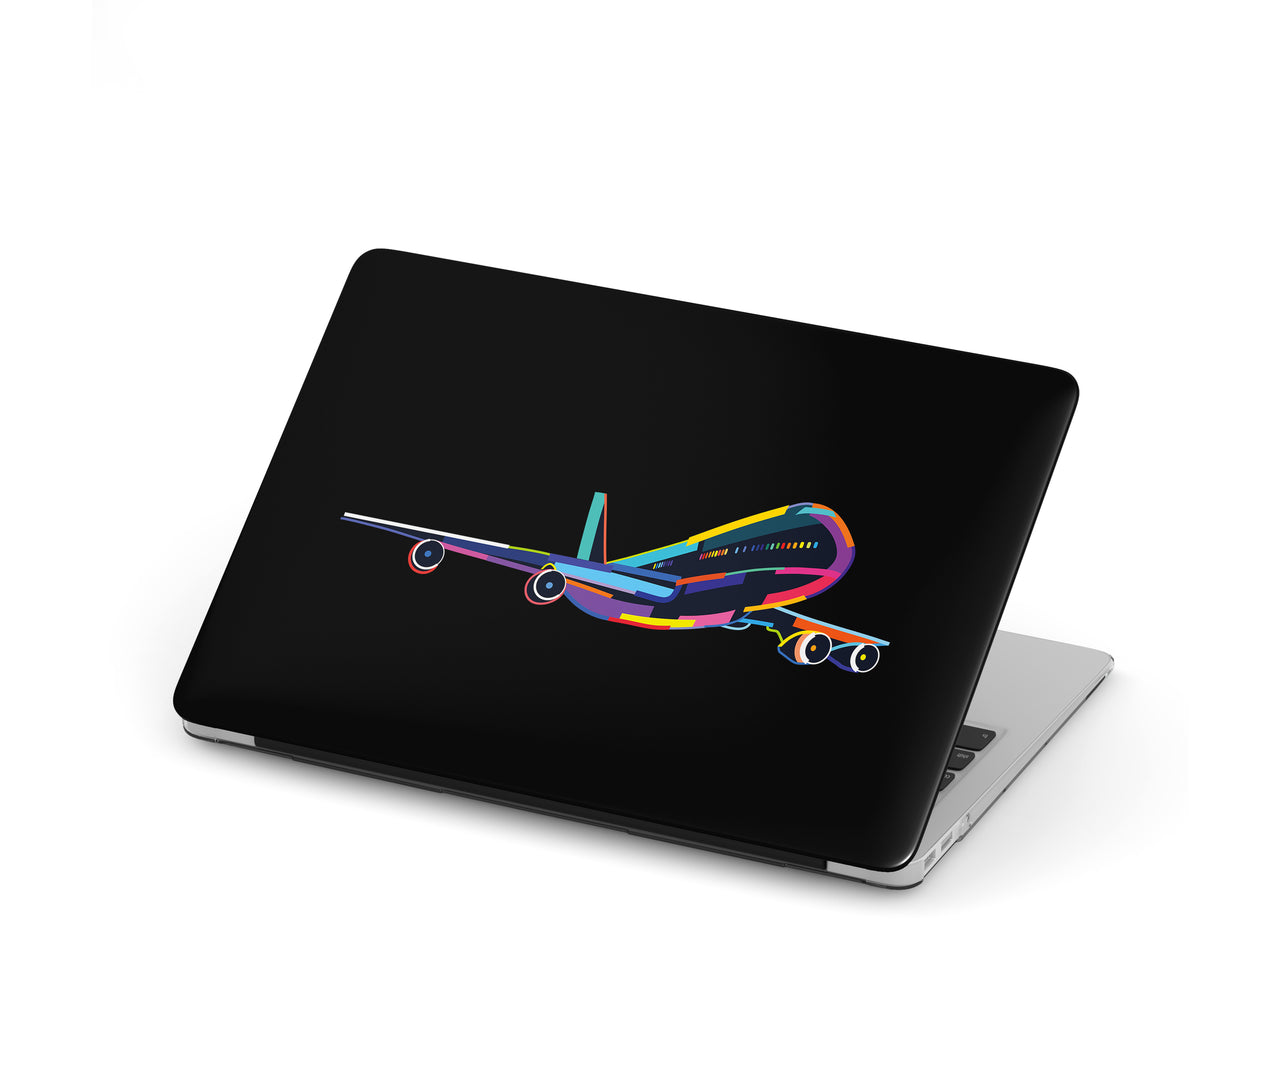 Multicolor Airplane Designed Macbook Cases